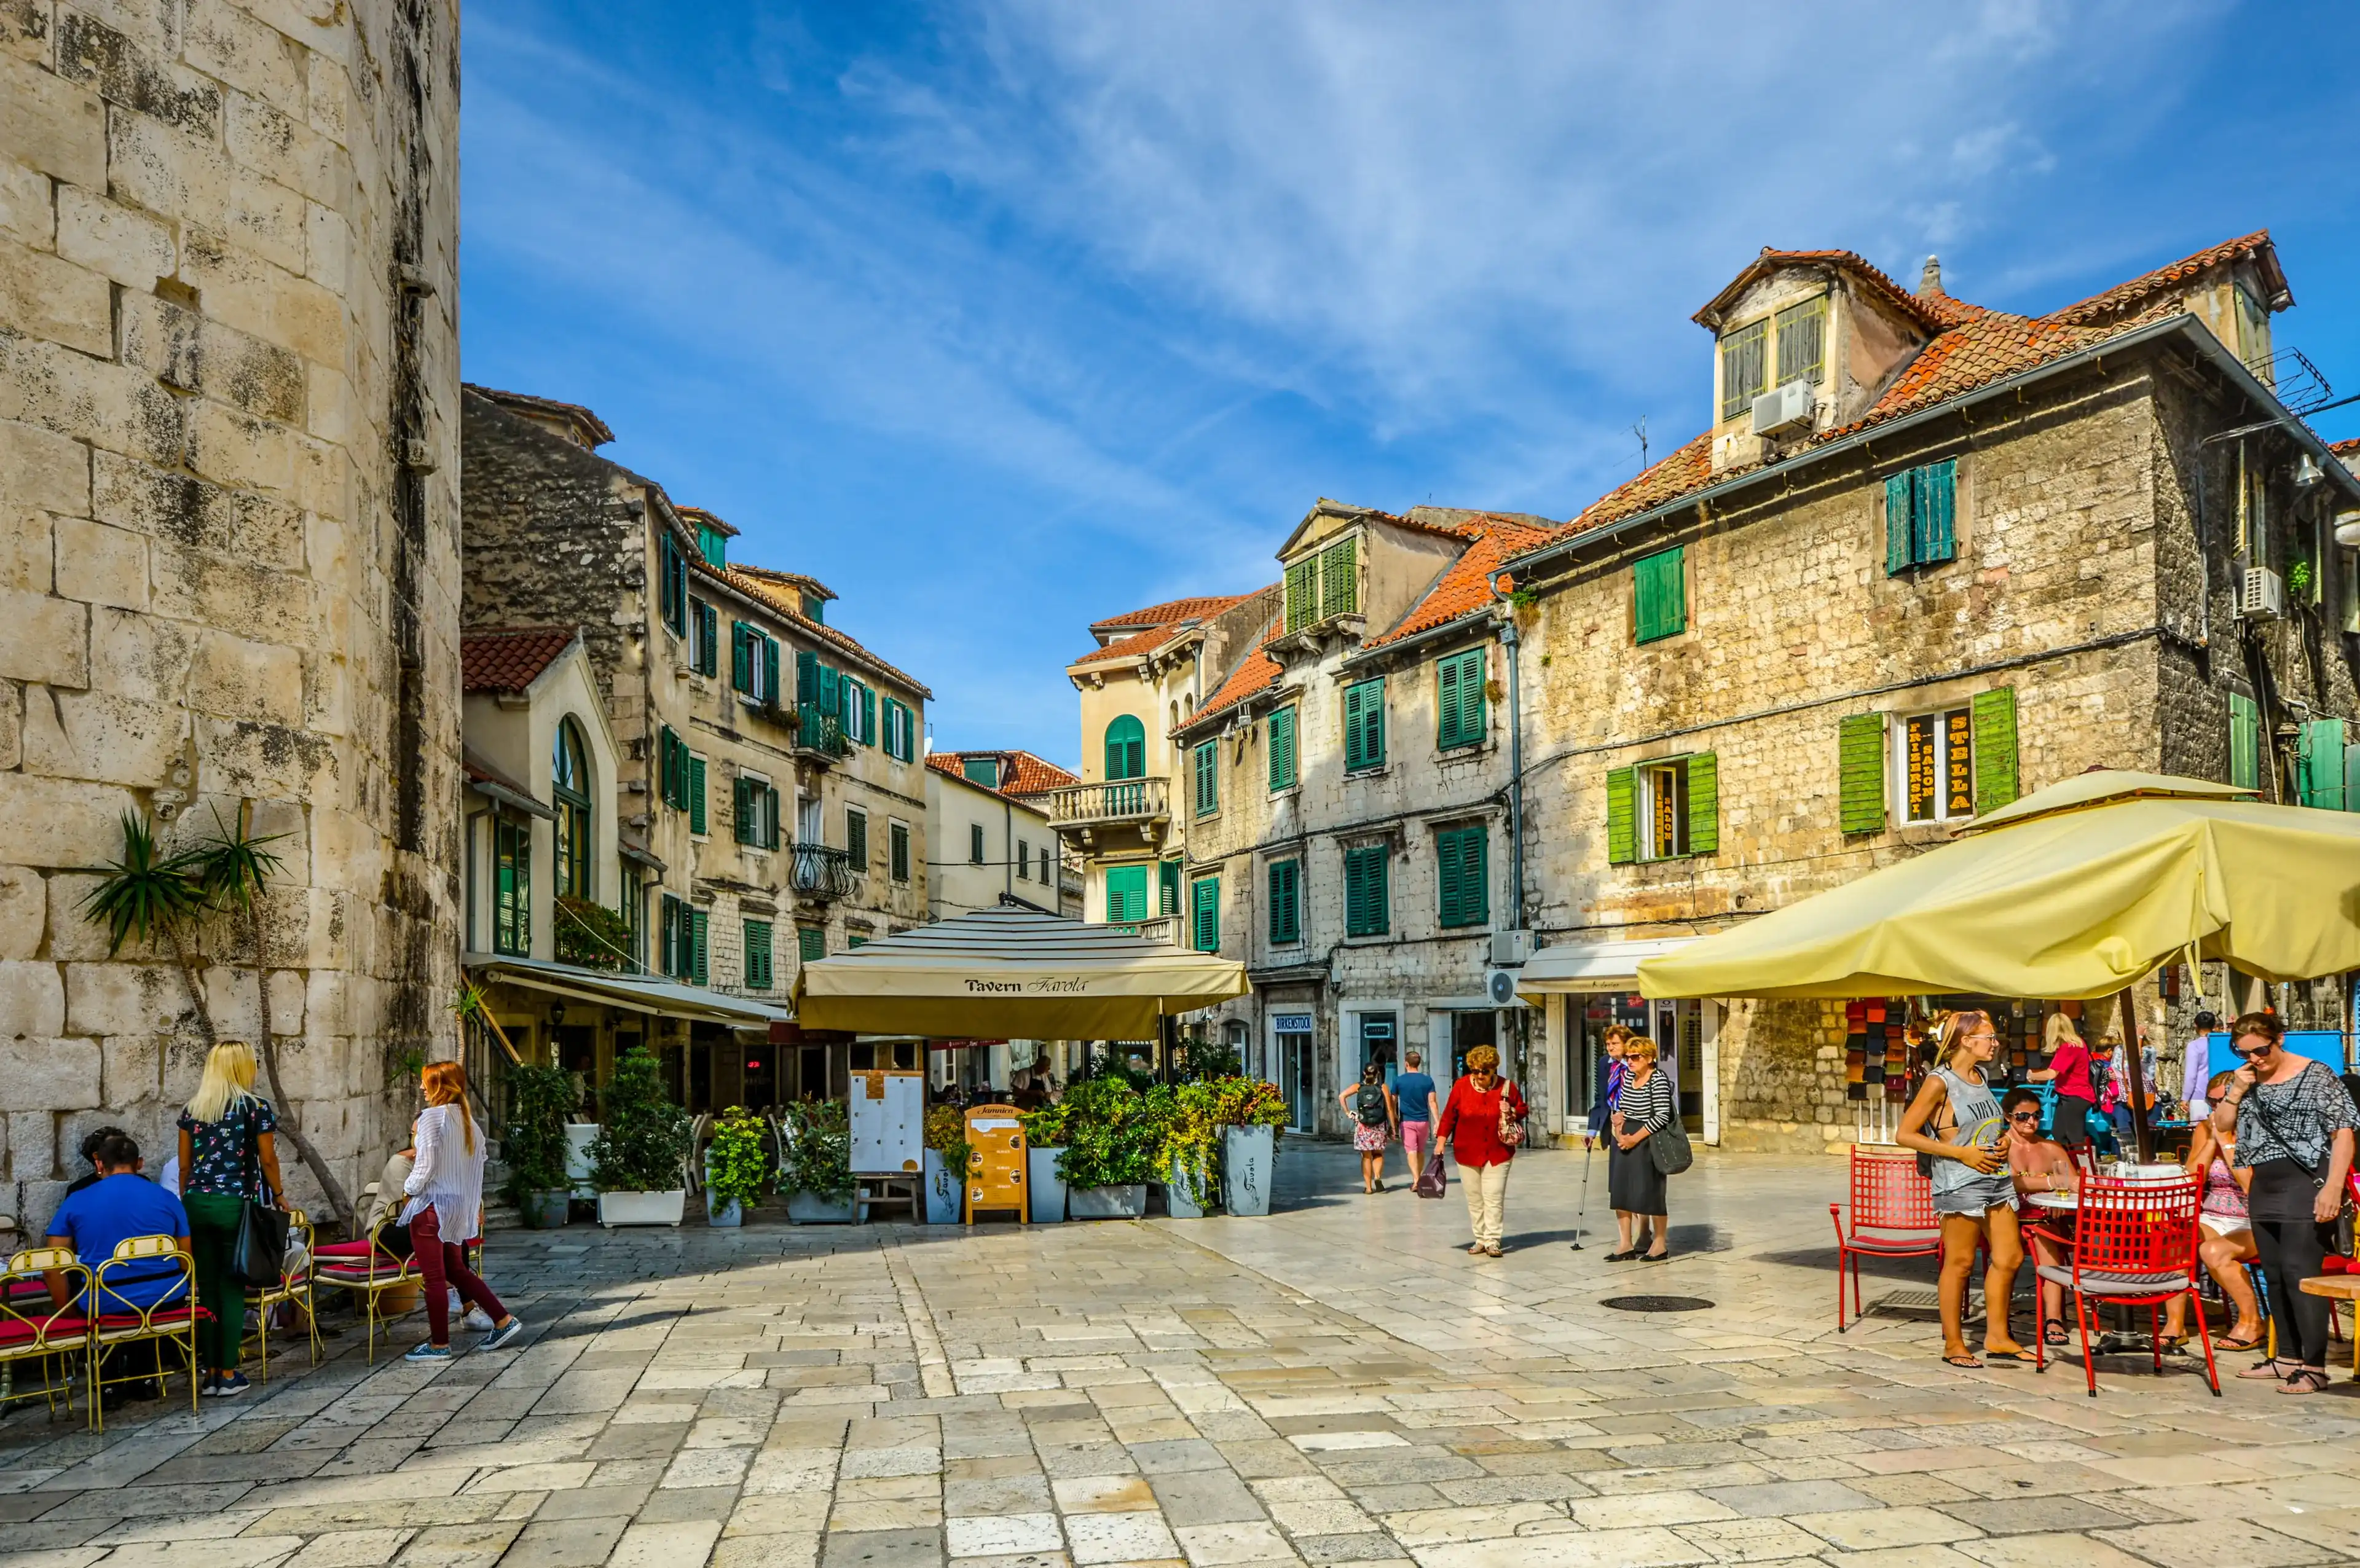 Best Split hotels. Cheap hotels in Split, Croatia